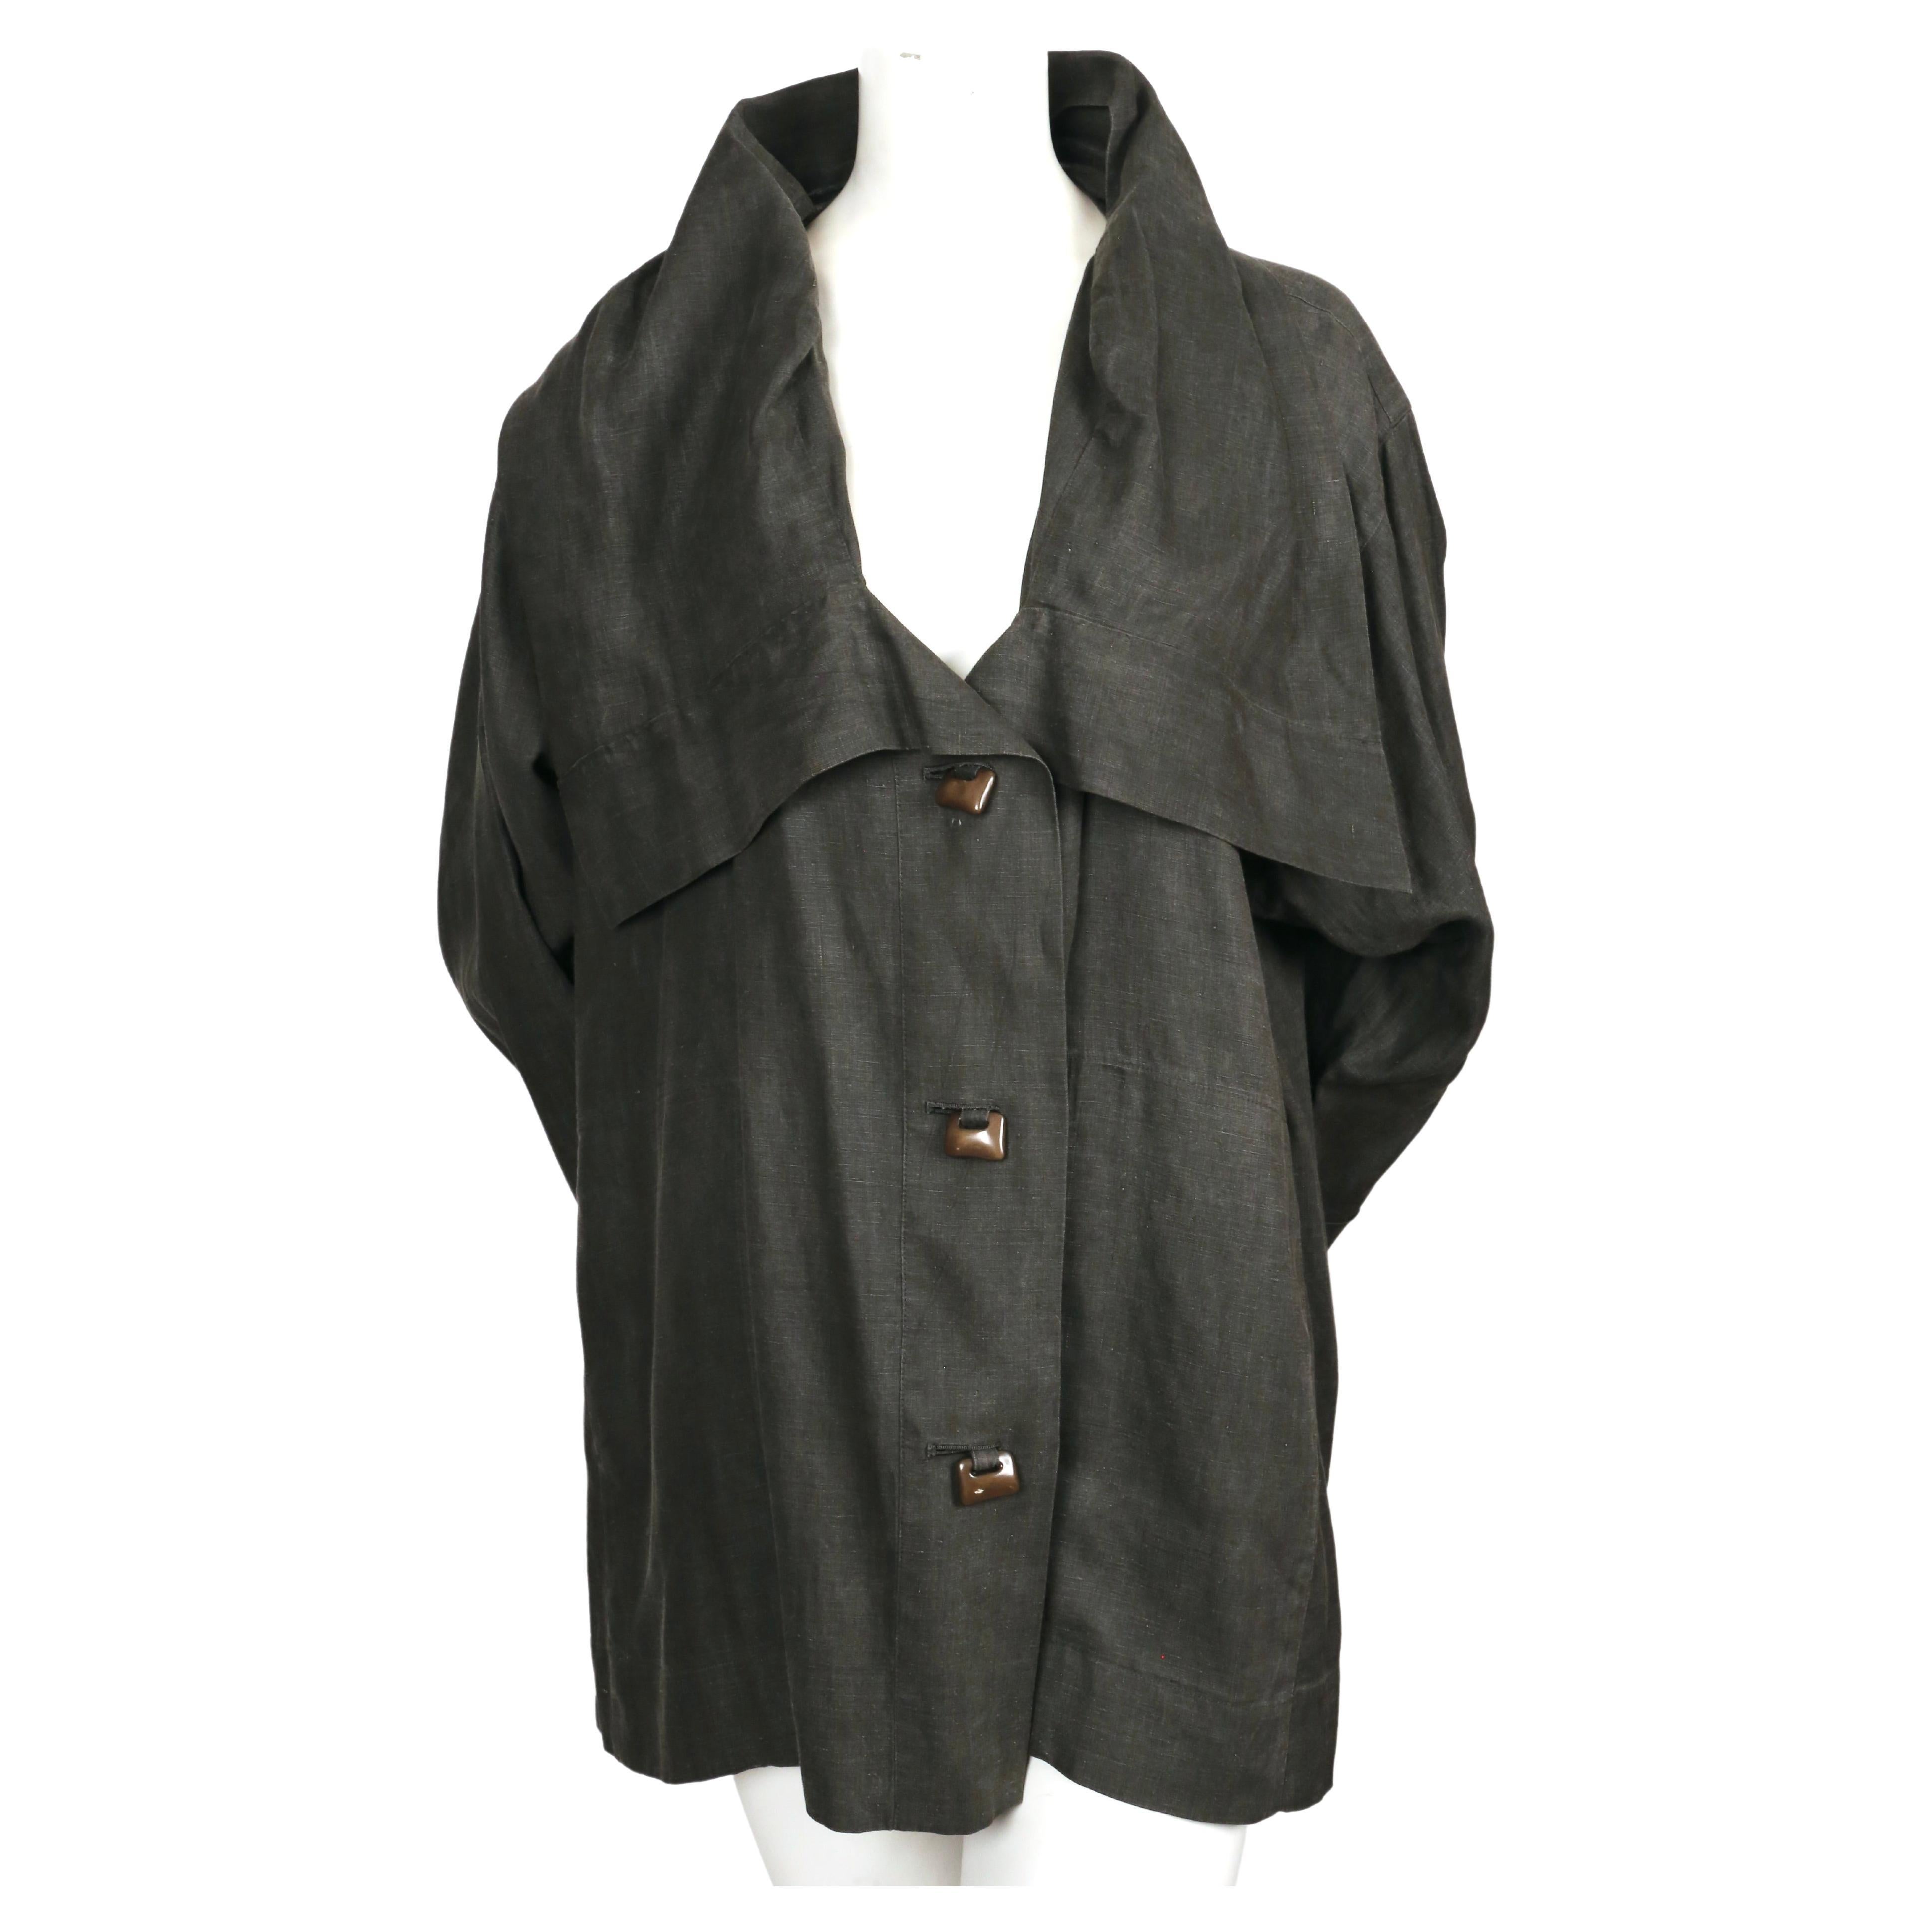 Veste drapée en lin gris avec fermeture à boutons kaki unique, conçue par Issey Miyake et datant du début des années 1980. La taille est flexible en raison de la coupe surdimensionnée. Labellisé taille japonaise 'M'.  La veste a des poches cachées